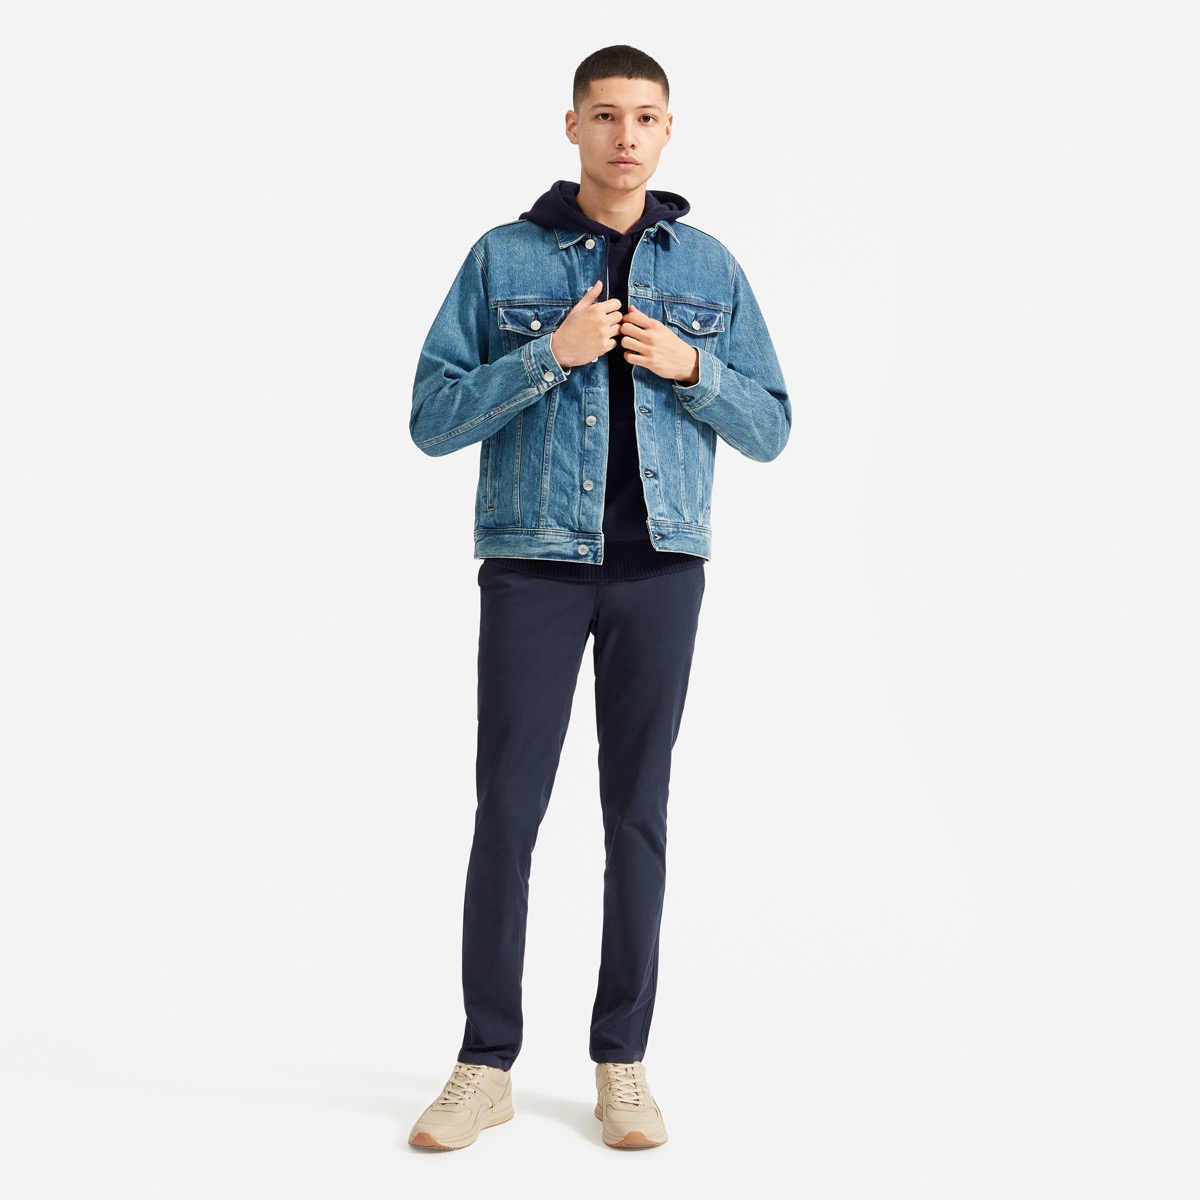 Man wearing casual jean jacket